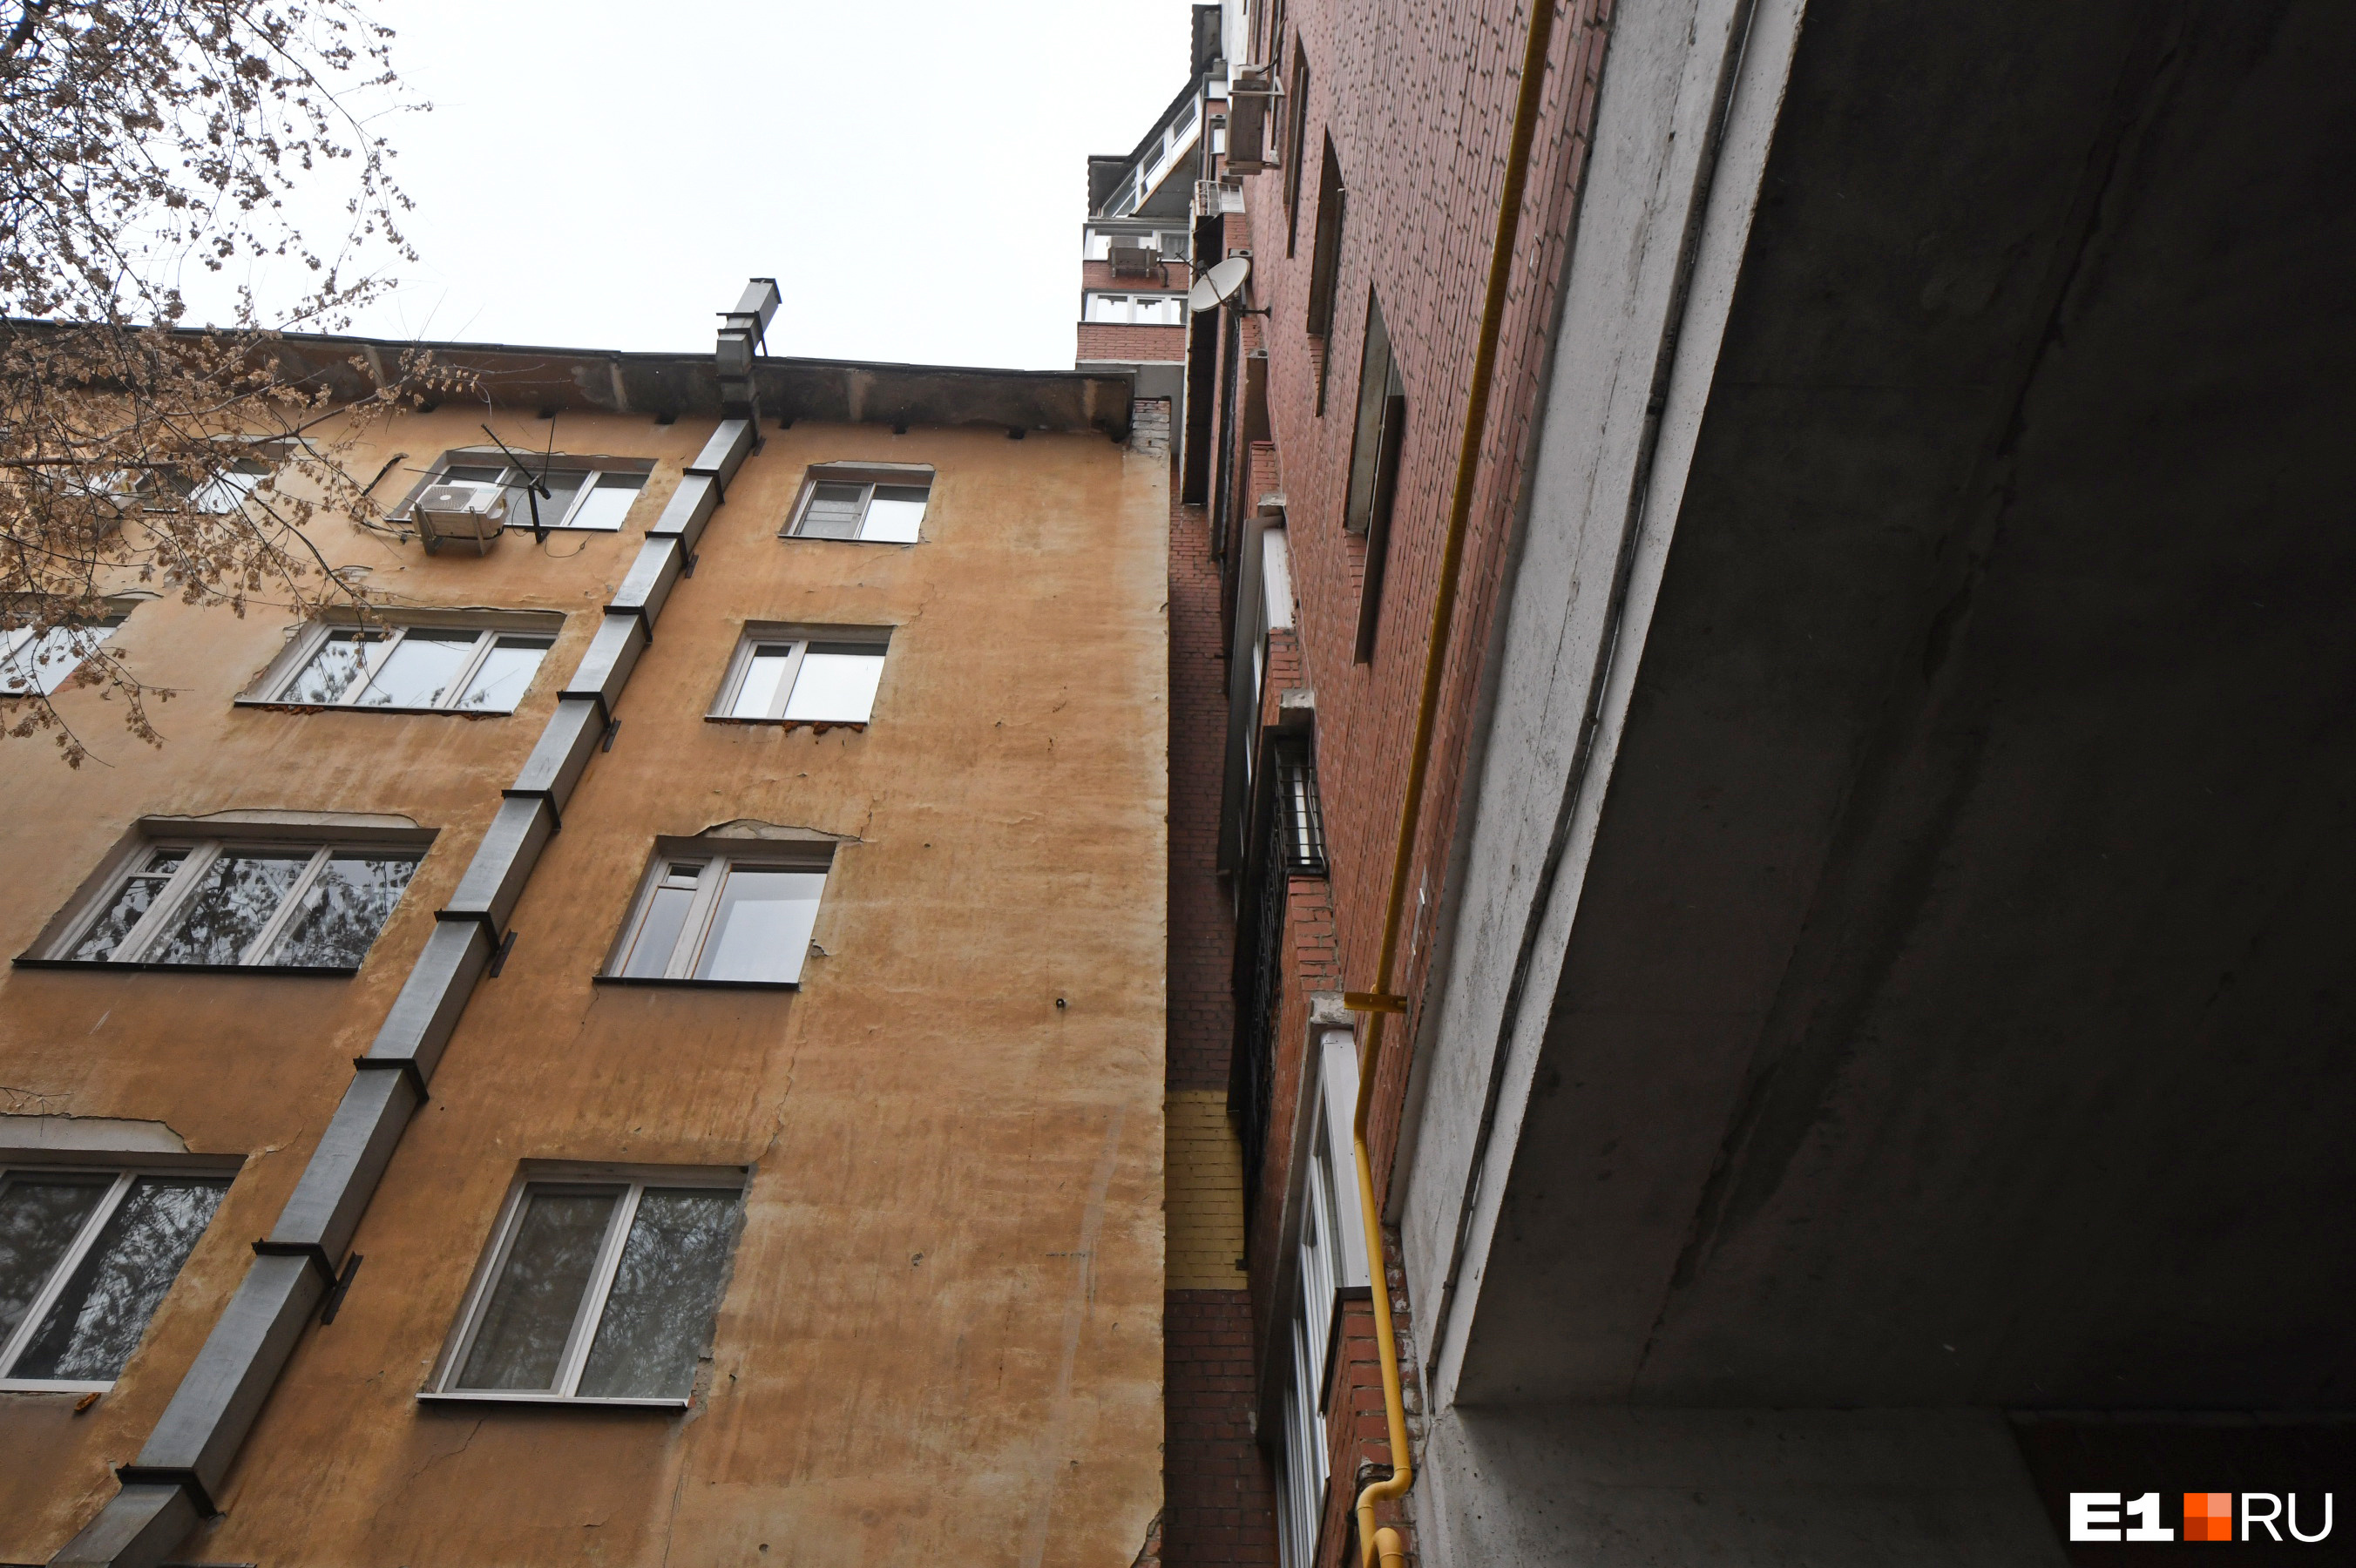 Жителям «заблокированных» квартир предложили переехать в новую девятиэтажку